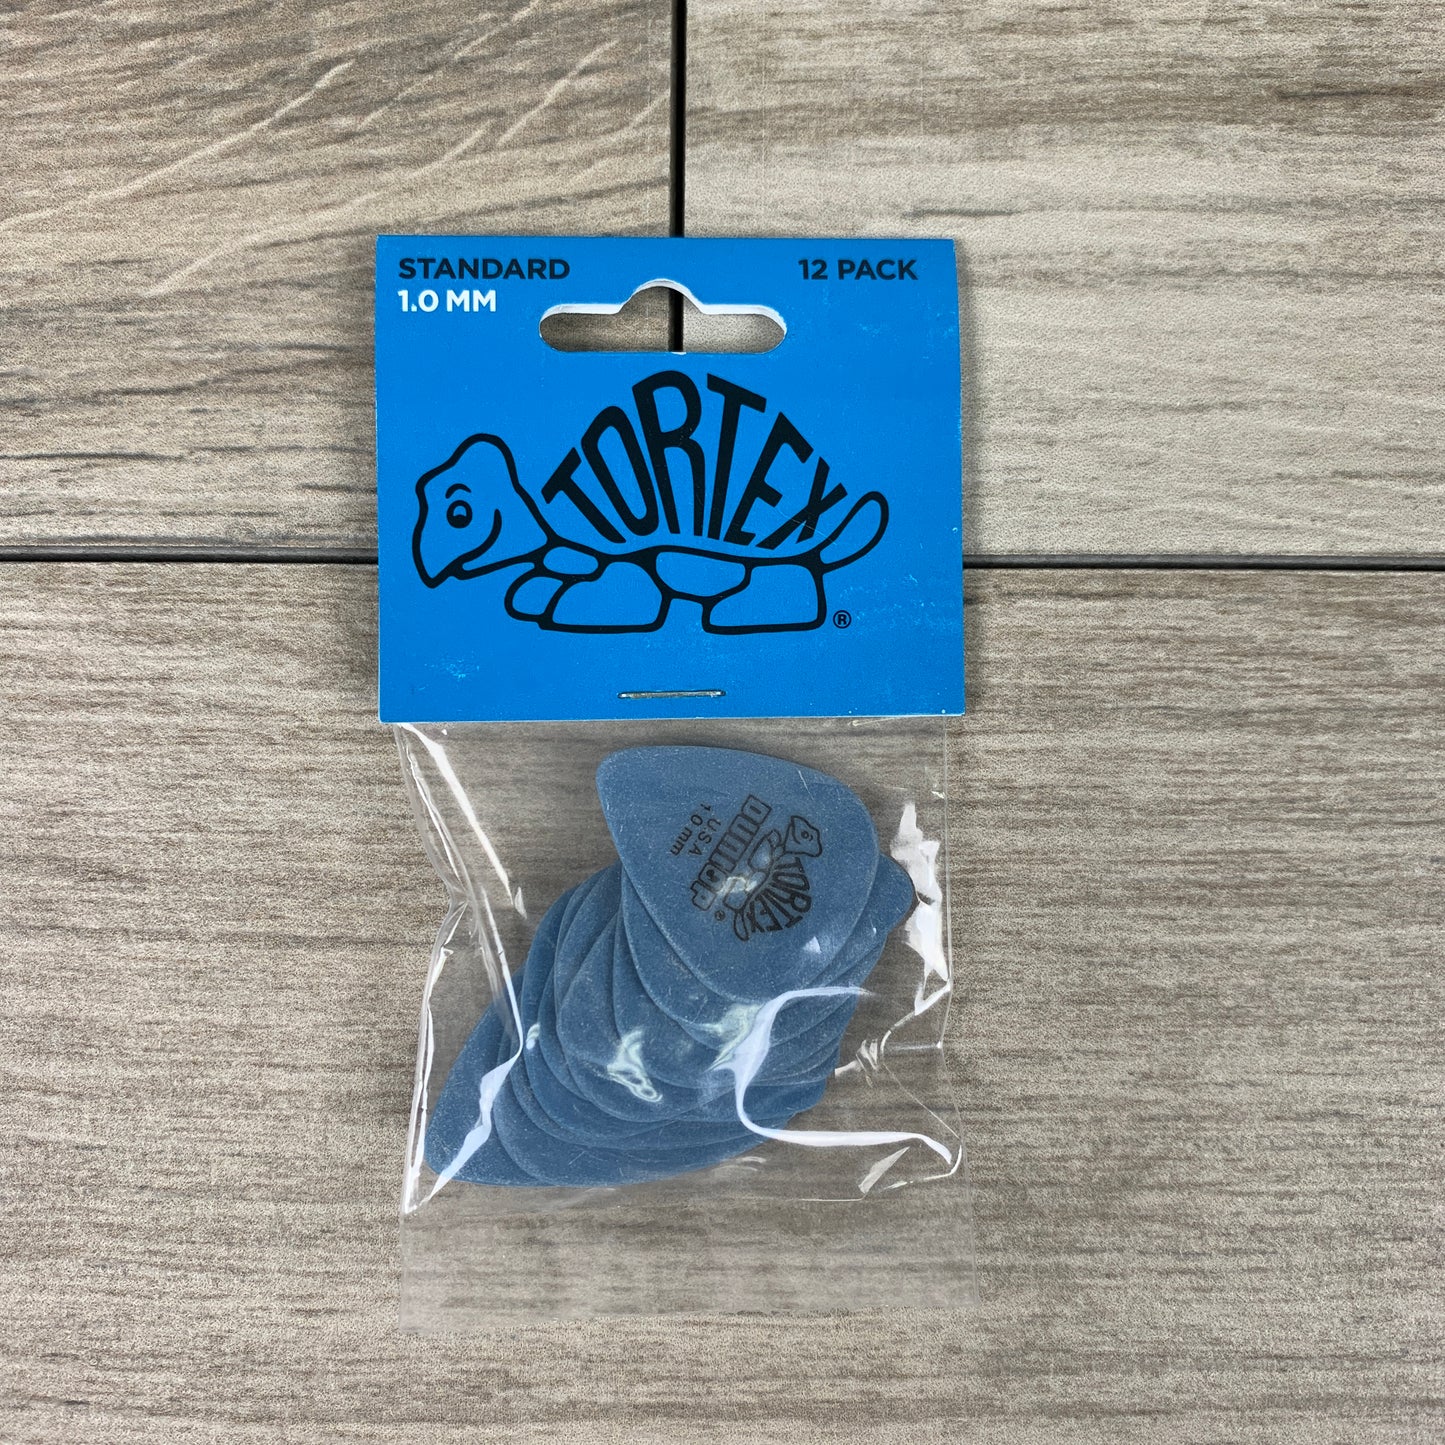 Dunlop Tortex Standard Picks, 12-Pack, 1.0mm in Blue